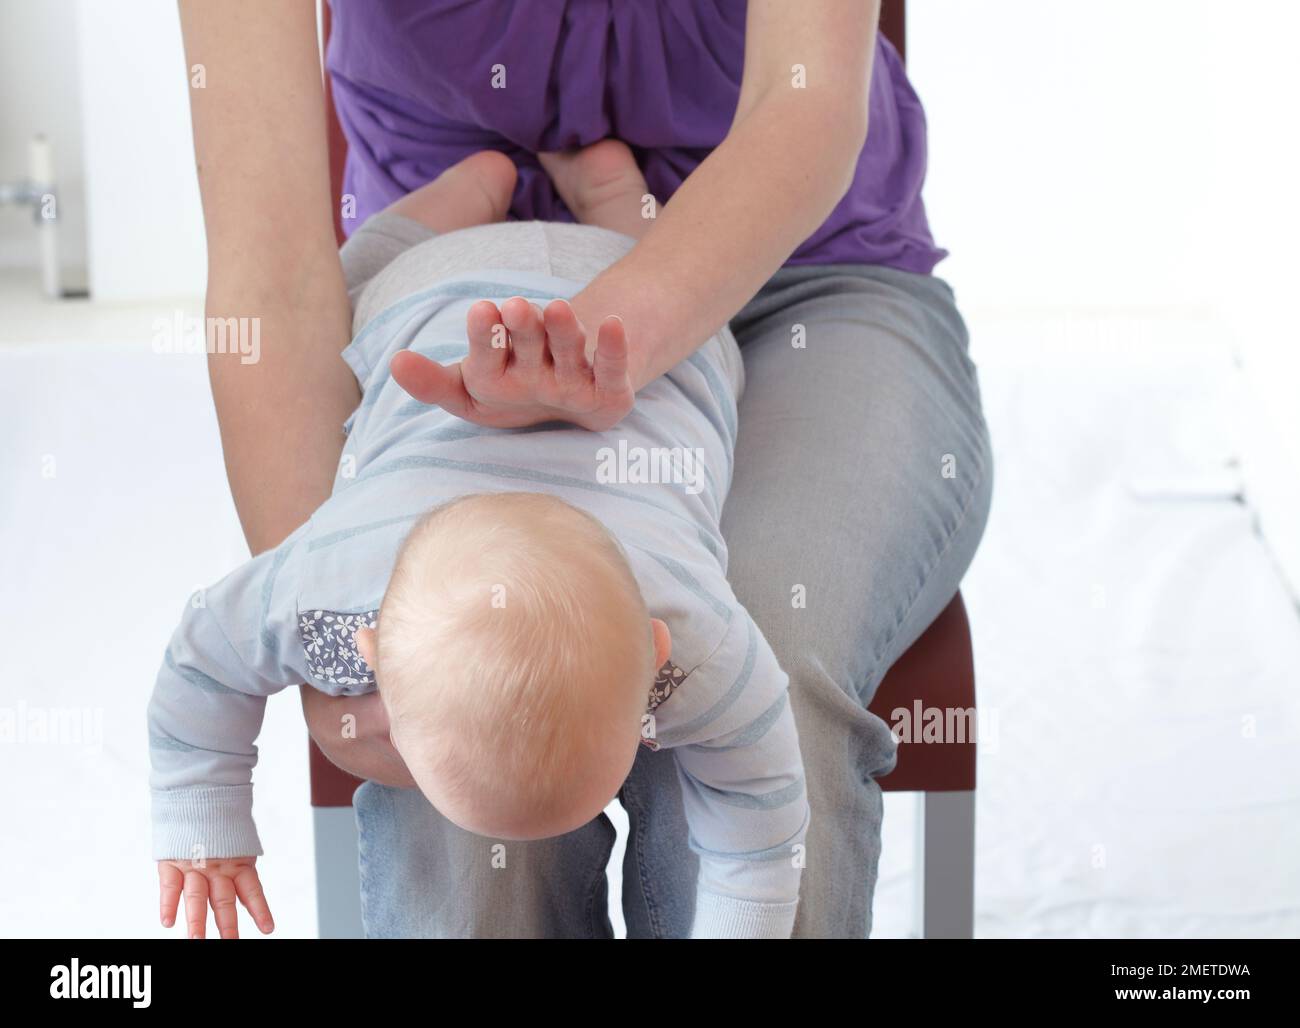 Trattamento di primo soccorso di soffocare il bambino, schiaffo sulla schiena Foto Stock